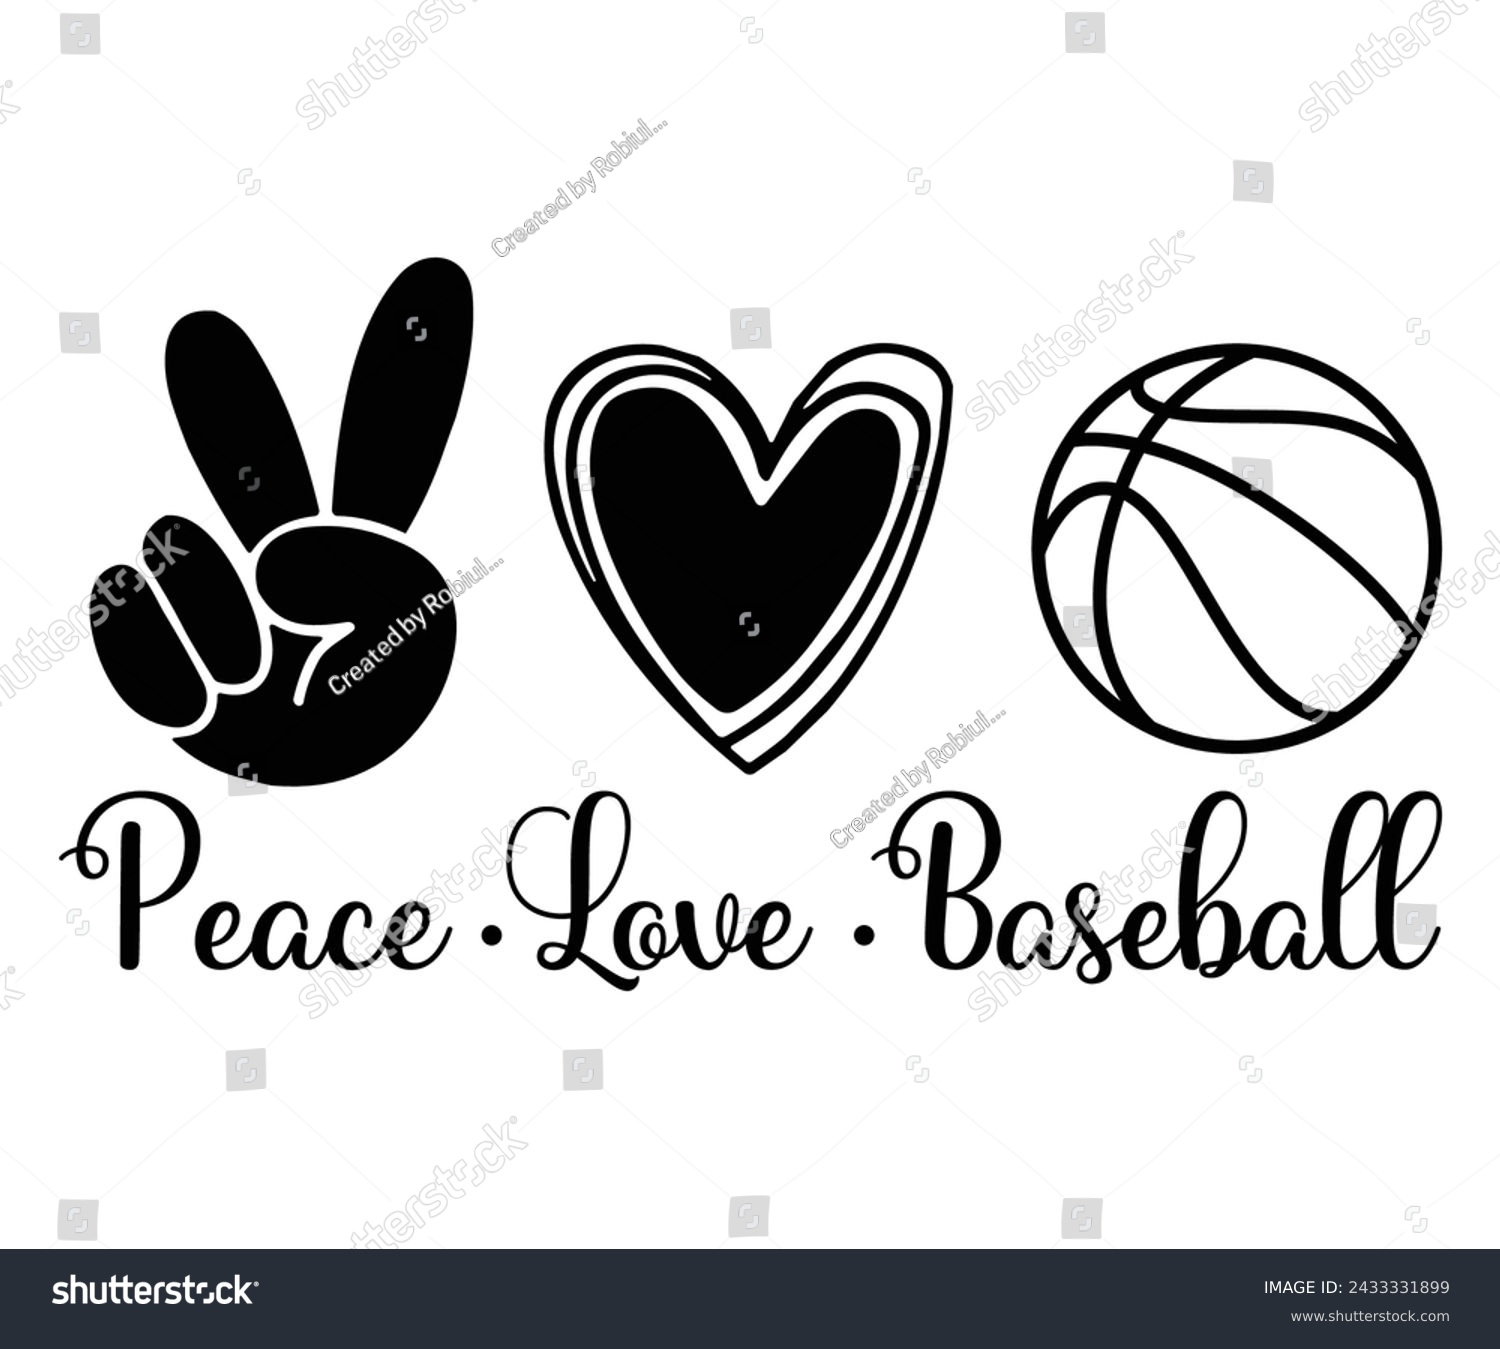 SVG of Peace love baseball, Baseball Mom Shirt Svg,Sports Dad, Baseball Day Shirt Svg,Baseball Team Shirt, Game Day  Women, Funny Baseball Shirt Svg,Gift for Mom, Cut File, Eps File svg